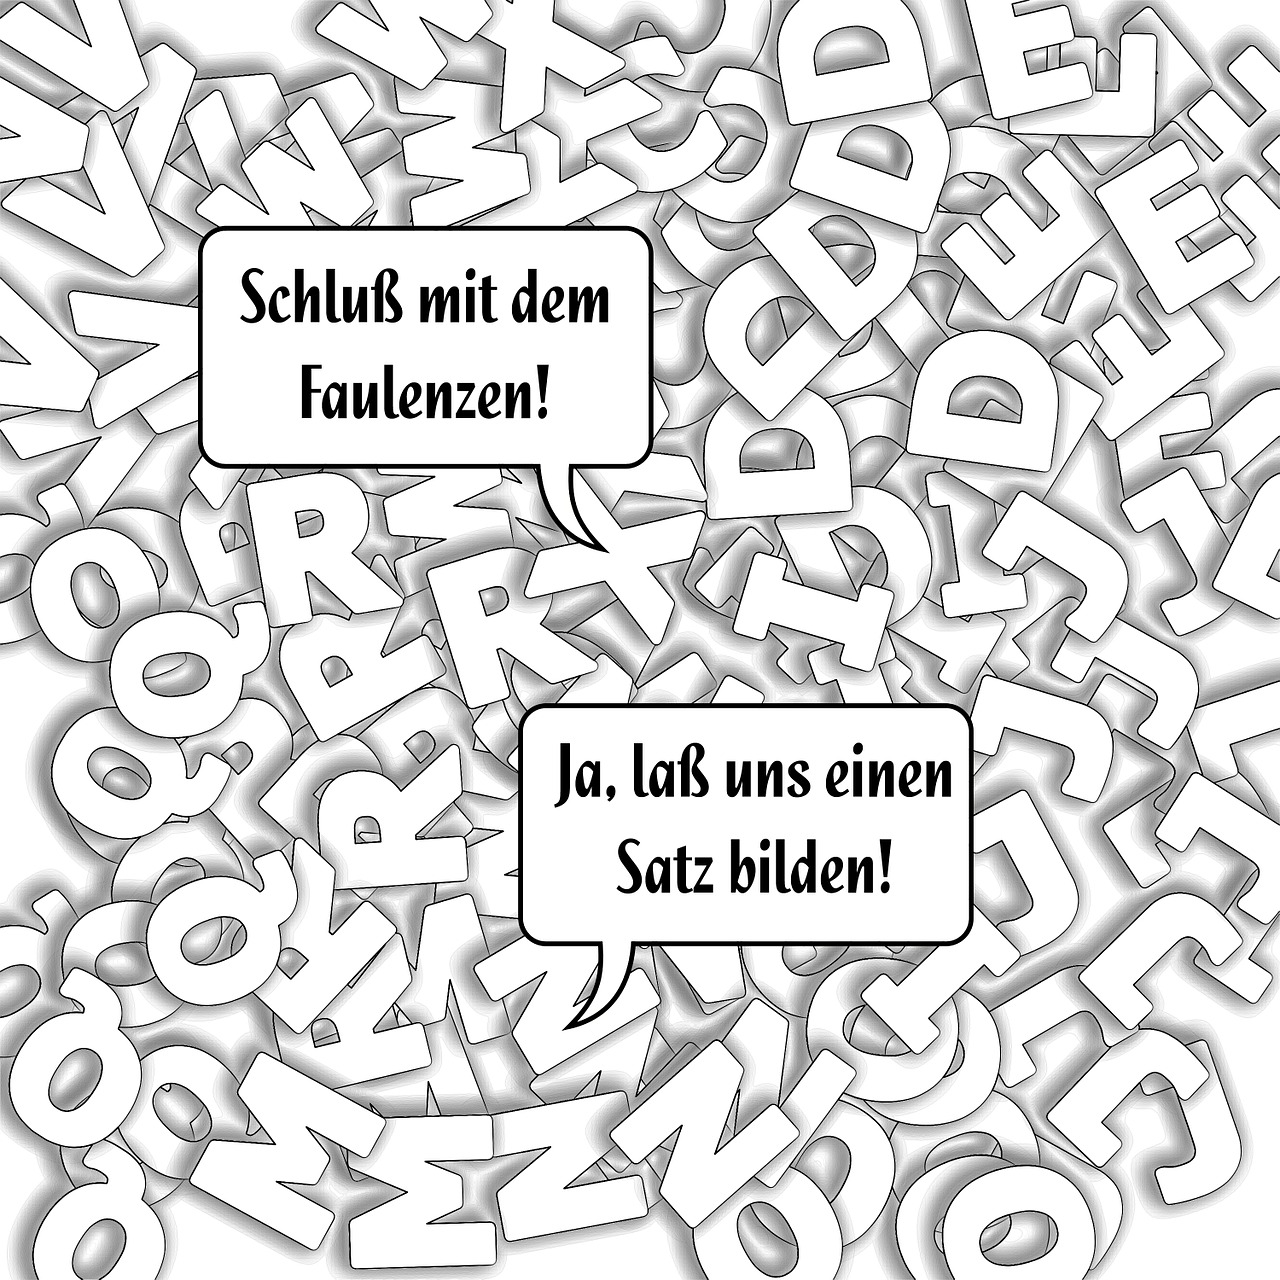 Język niemiecki w świecie biznesu – kurs języka niemieckiego Poznań